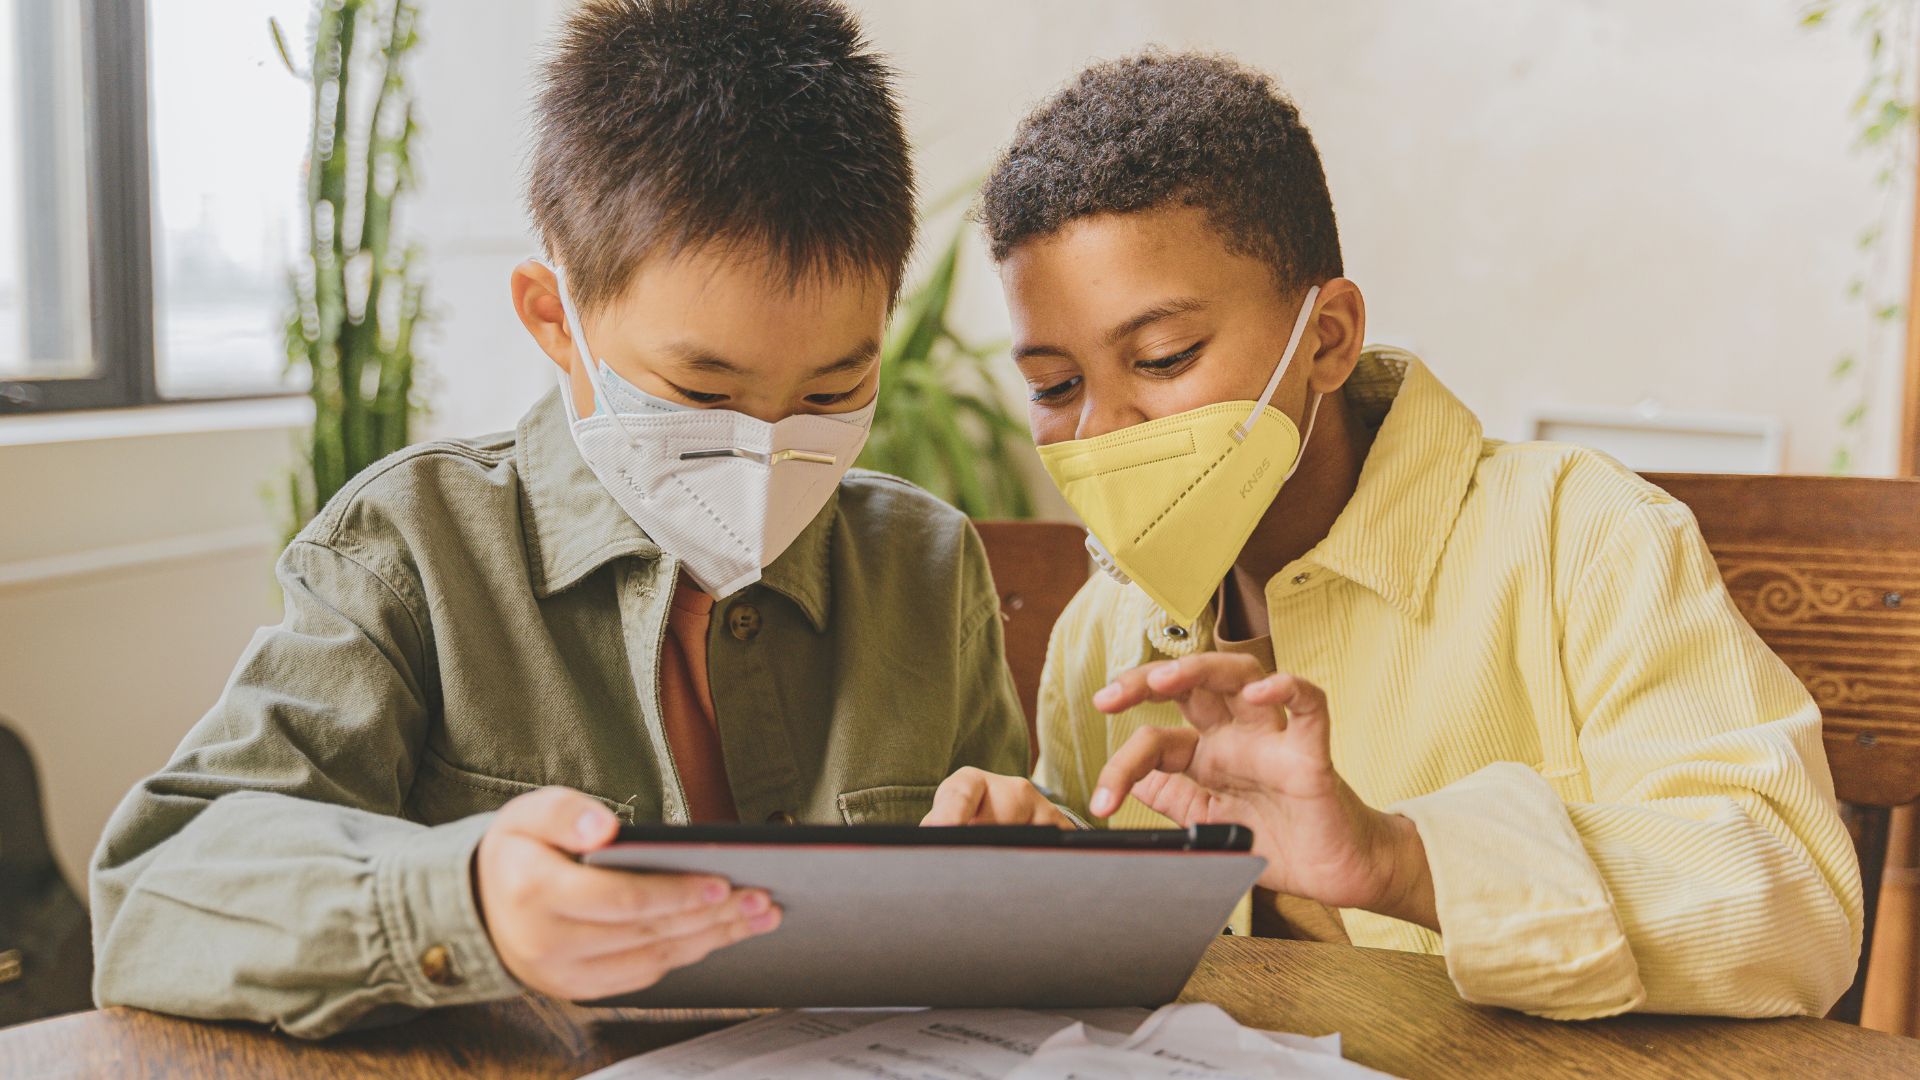 Uma criança de etnia amarela e outra negra olham para um tablet. Elas utilizam máscaras. A imagem ilustra matéria sobre lançamento de cartilhas voltadas à defesa de crianças e adolescentes na Internet.